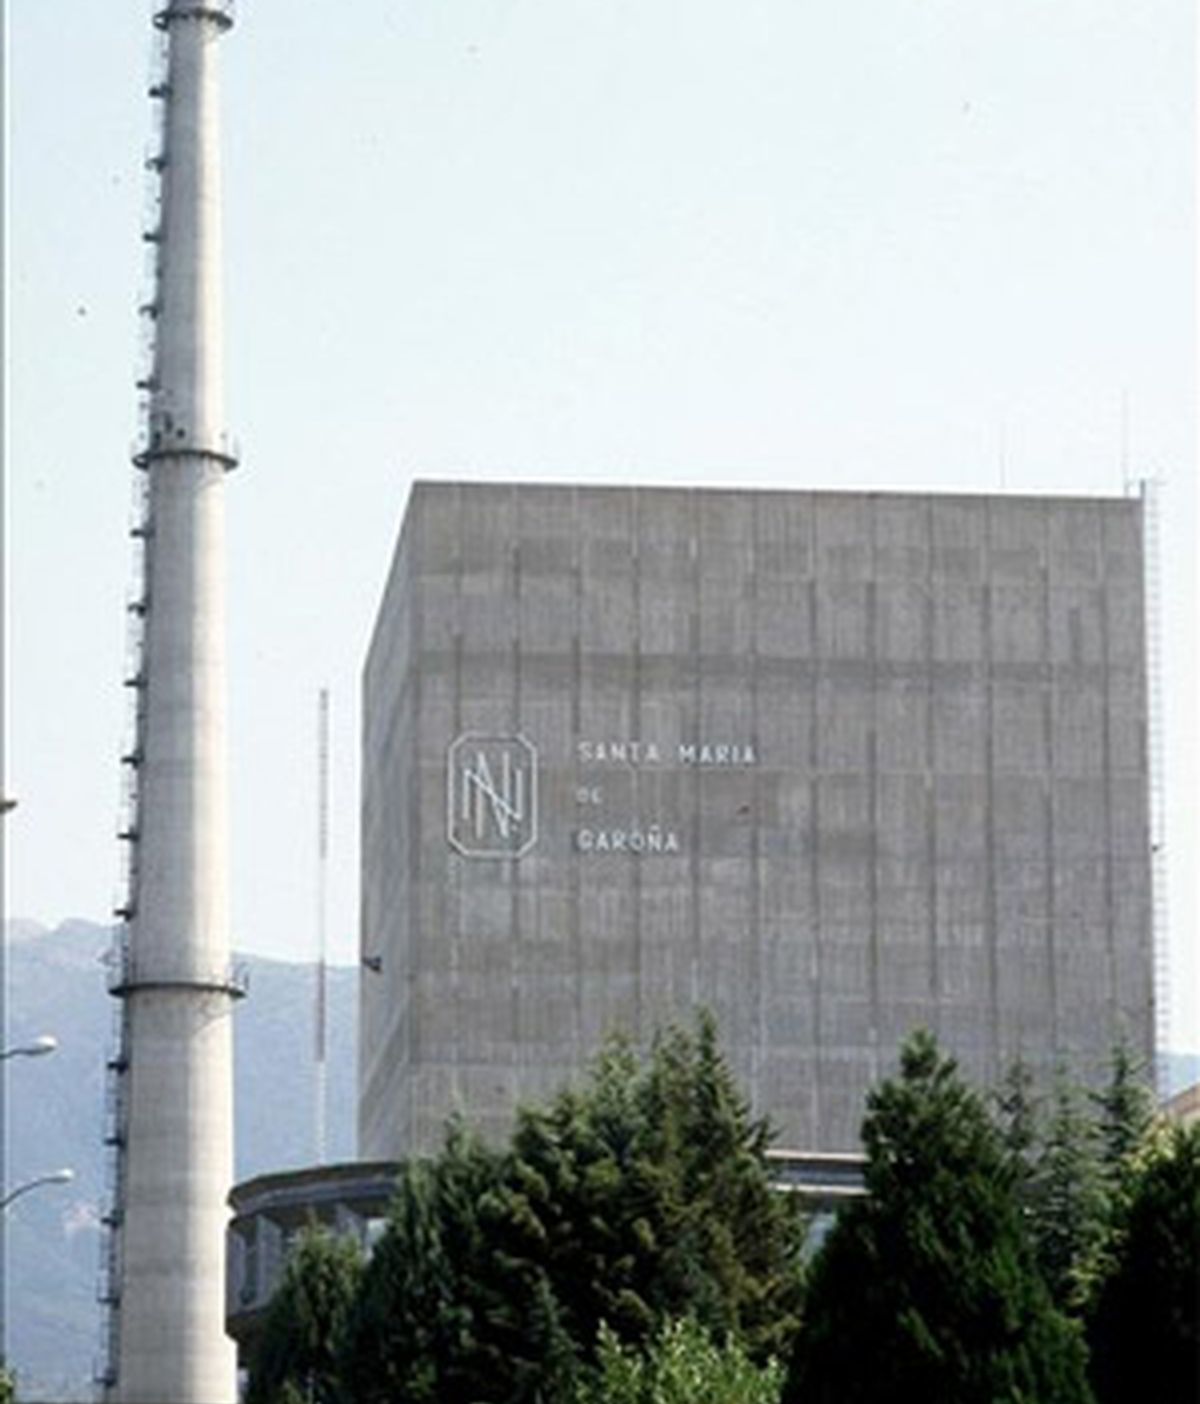 La central nuclear de Santa María de Garoña (Burgos) se inauguró en 1970. Foto: EFE.